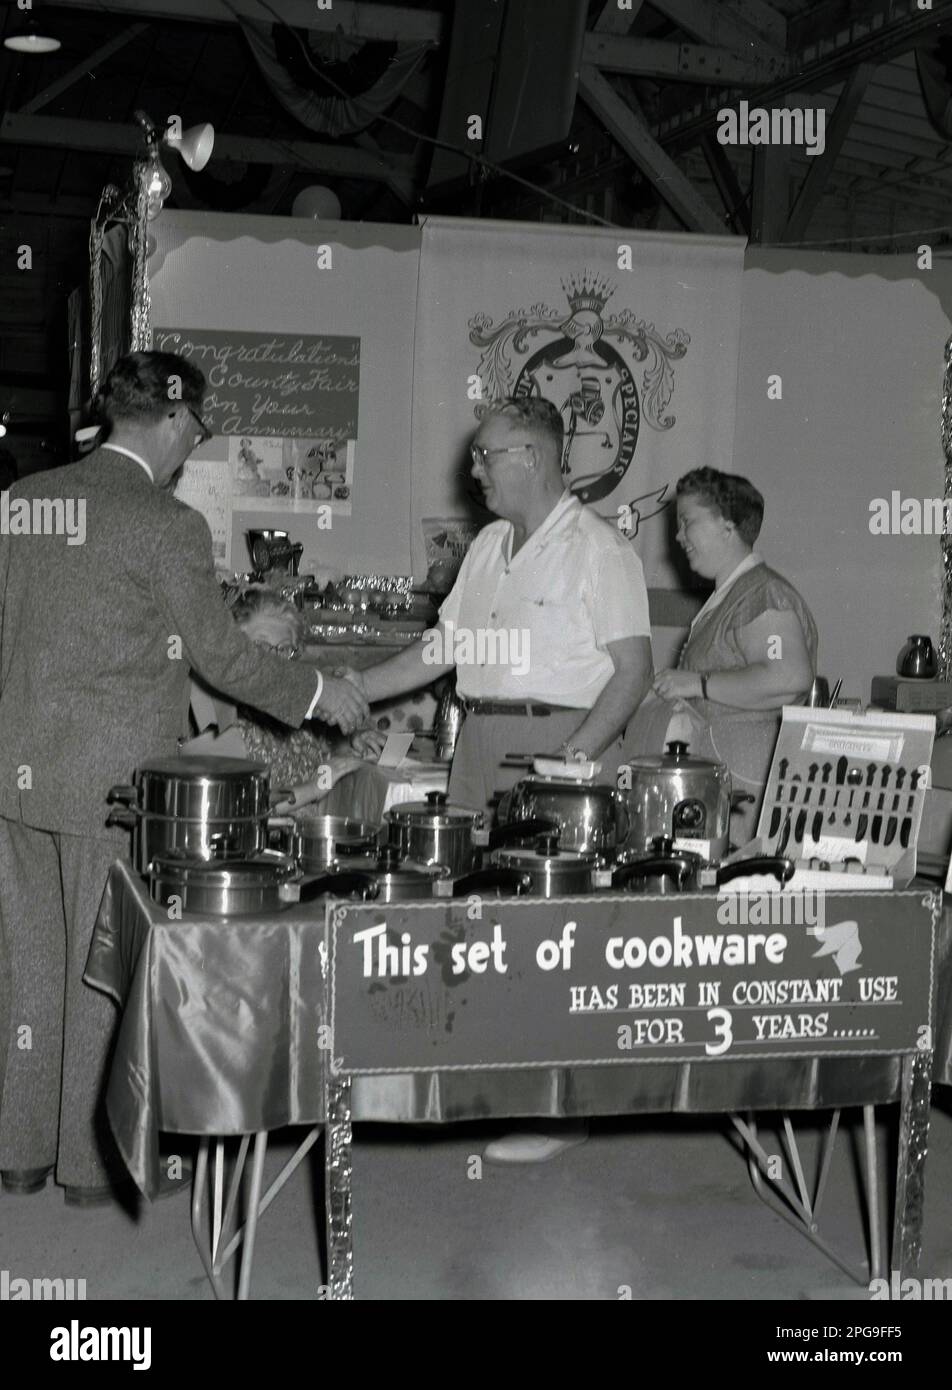 1956, historique, sur un stand d'exposition pour les distributeurs d'ustensiles de cuisine Saladmaster de la foire du comté de Lane, Eugene; Oregon, États-Unis. Des couverts en acier inoxydable sont exposés. Banner explique : « son batterie de cuisine est utilisée en permanence depuis 3 ans ». L'entreprise a commencé en 1947 avec un seul produit - la machine Saladmaster - et a élargi sa gamme de récipients pour devenir l'une des 100 premières entreprises du Texas à l'horizon 1970s. Banque D'Images